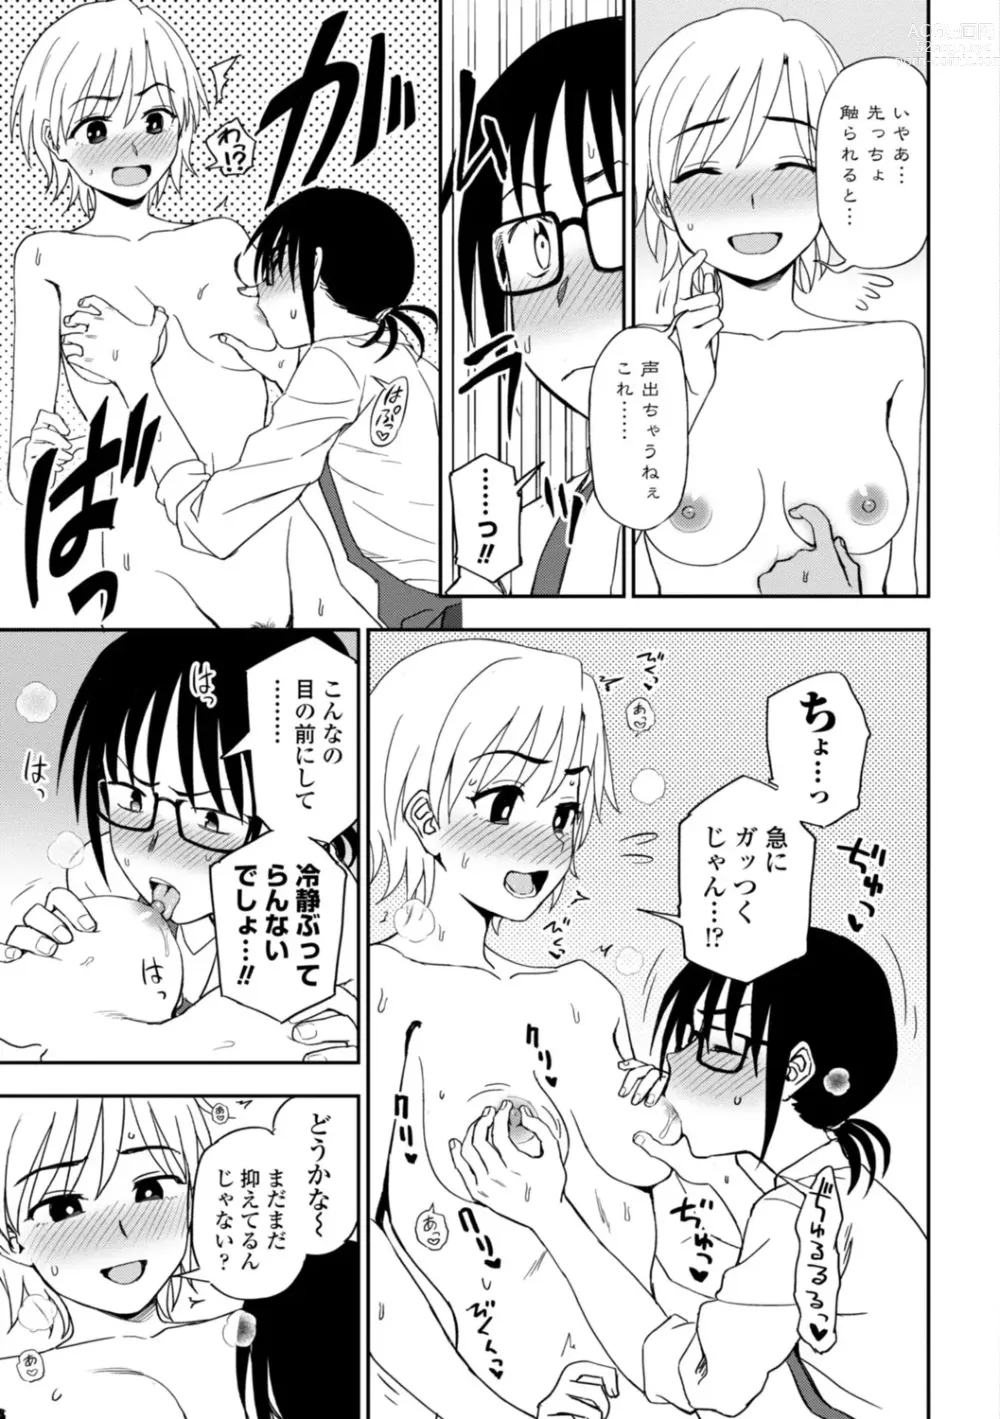 Page 183 of manga Watashi no Subete Sasagemasu - Ill give you all of mine.